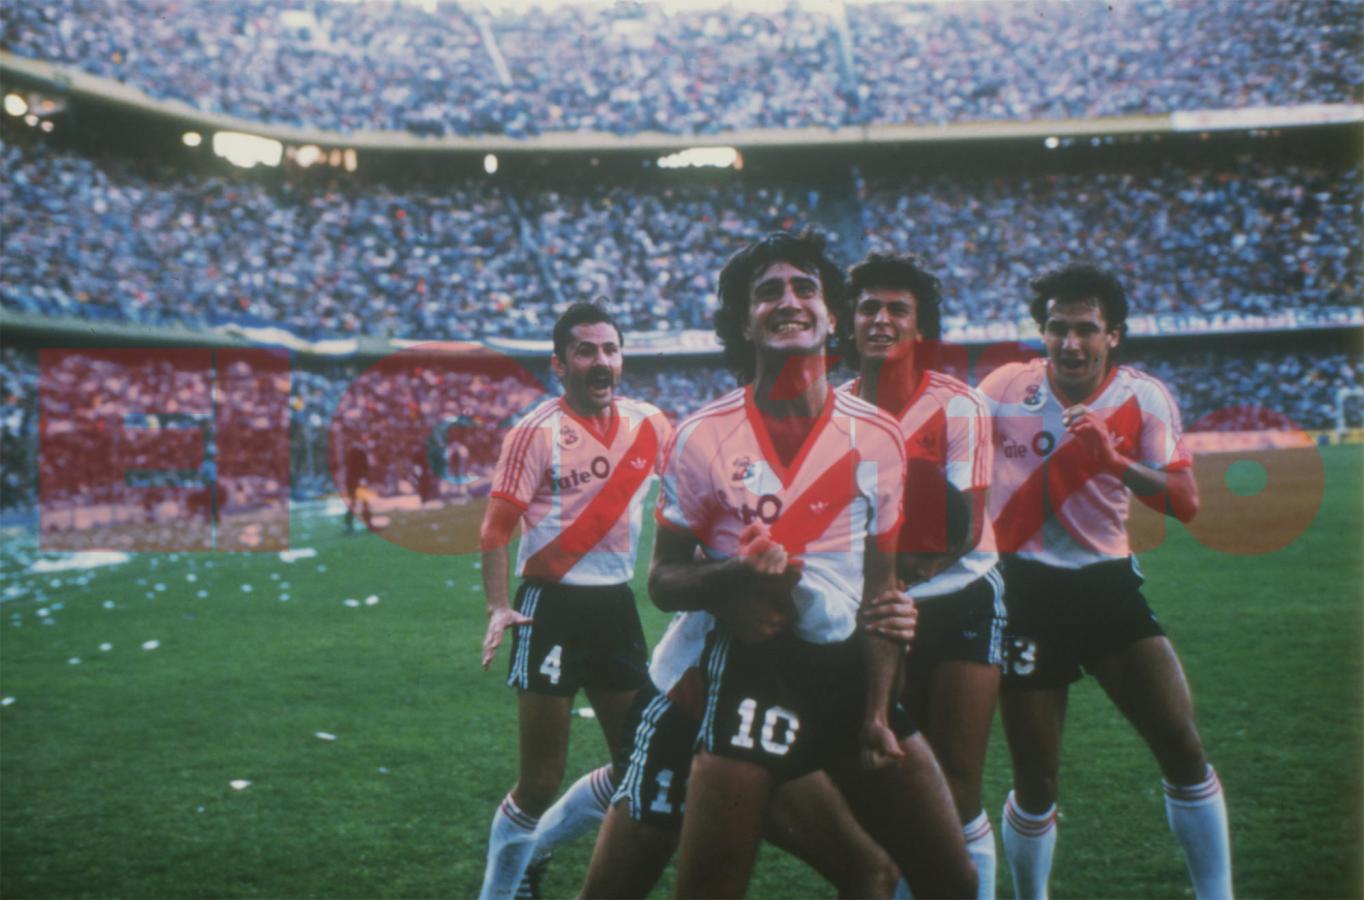 Imagen 1986, el año perfecto: doblete a Boca y vuelta olímpica en La Bombonera